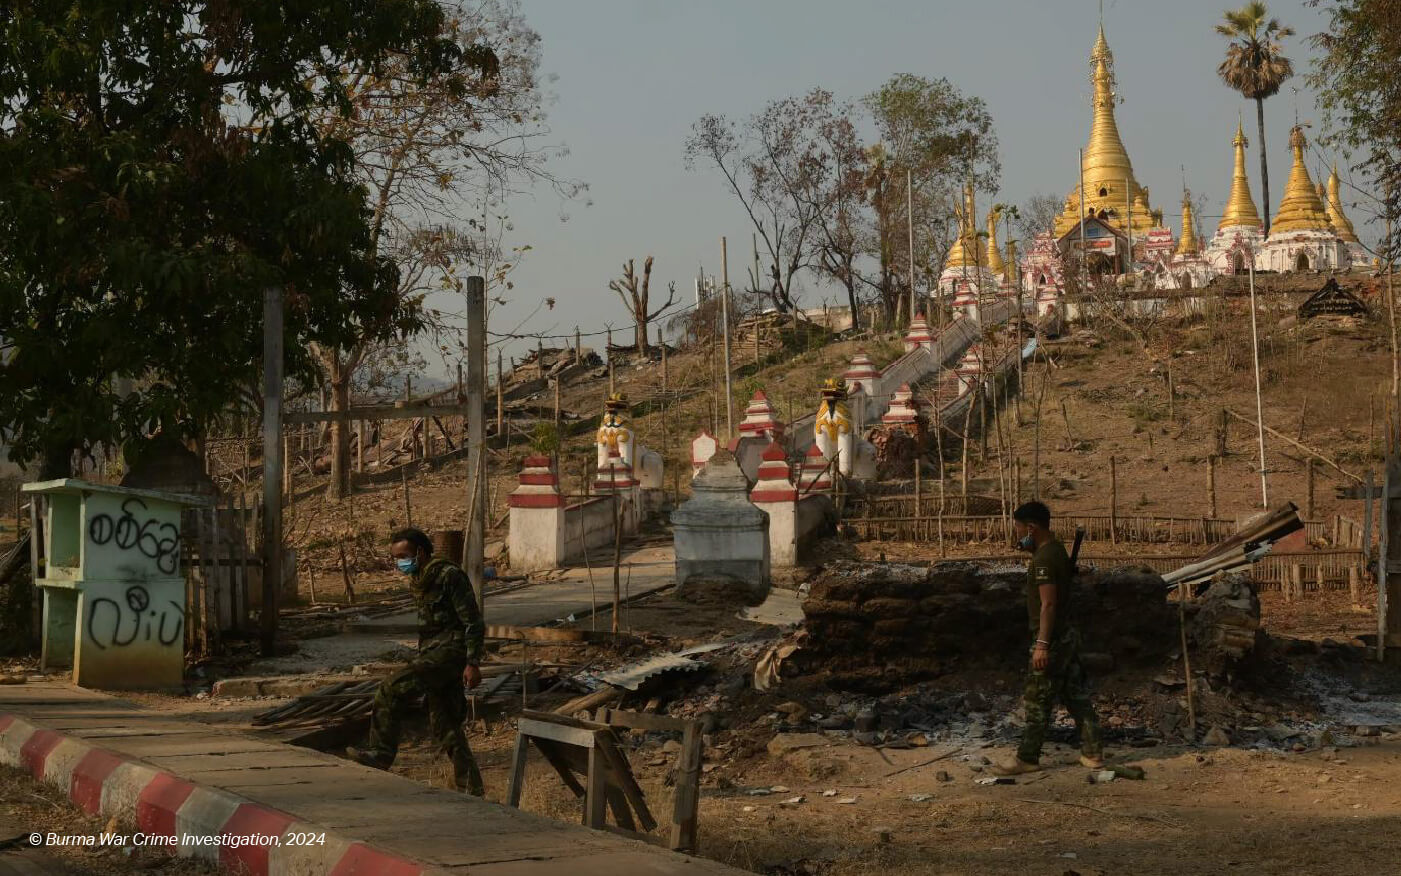 Myanmar: Investigate Civilian Killings in Karenni State, Hold Perpetrators Accountable